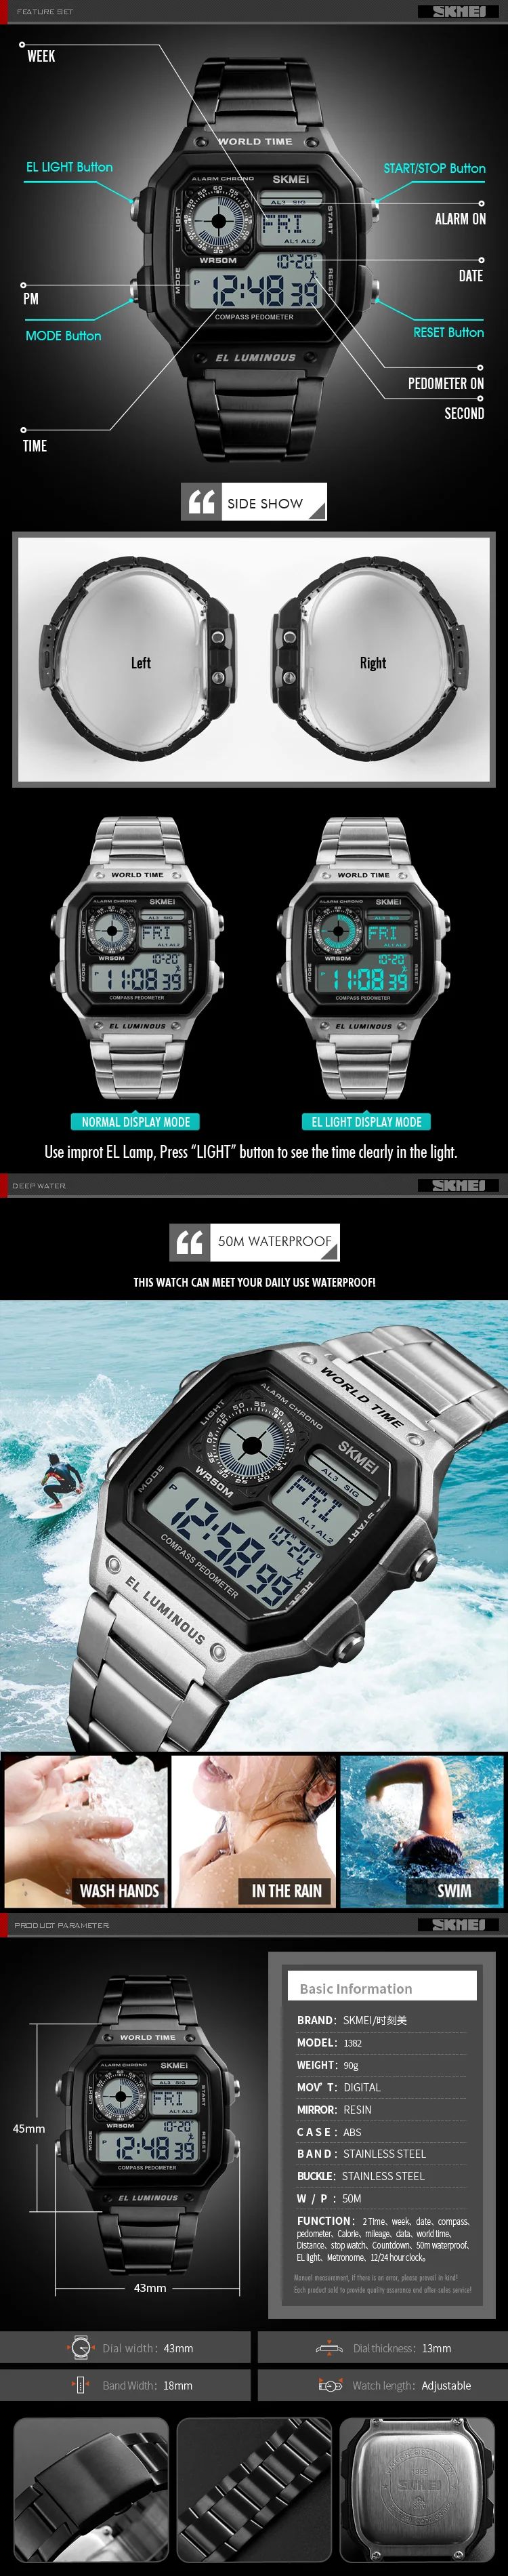 Обратный отсчет компас спортивные часы SKMEI Для мужчин s часы от топ бренда, Роскошные наручные часы Для мужчин Водонепроницаемый светодиодный электронные цифровые часы мужские часы